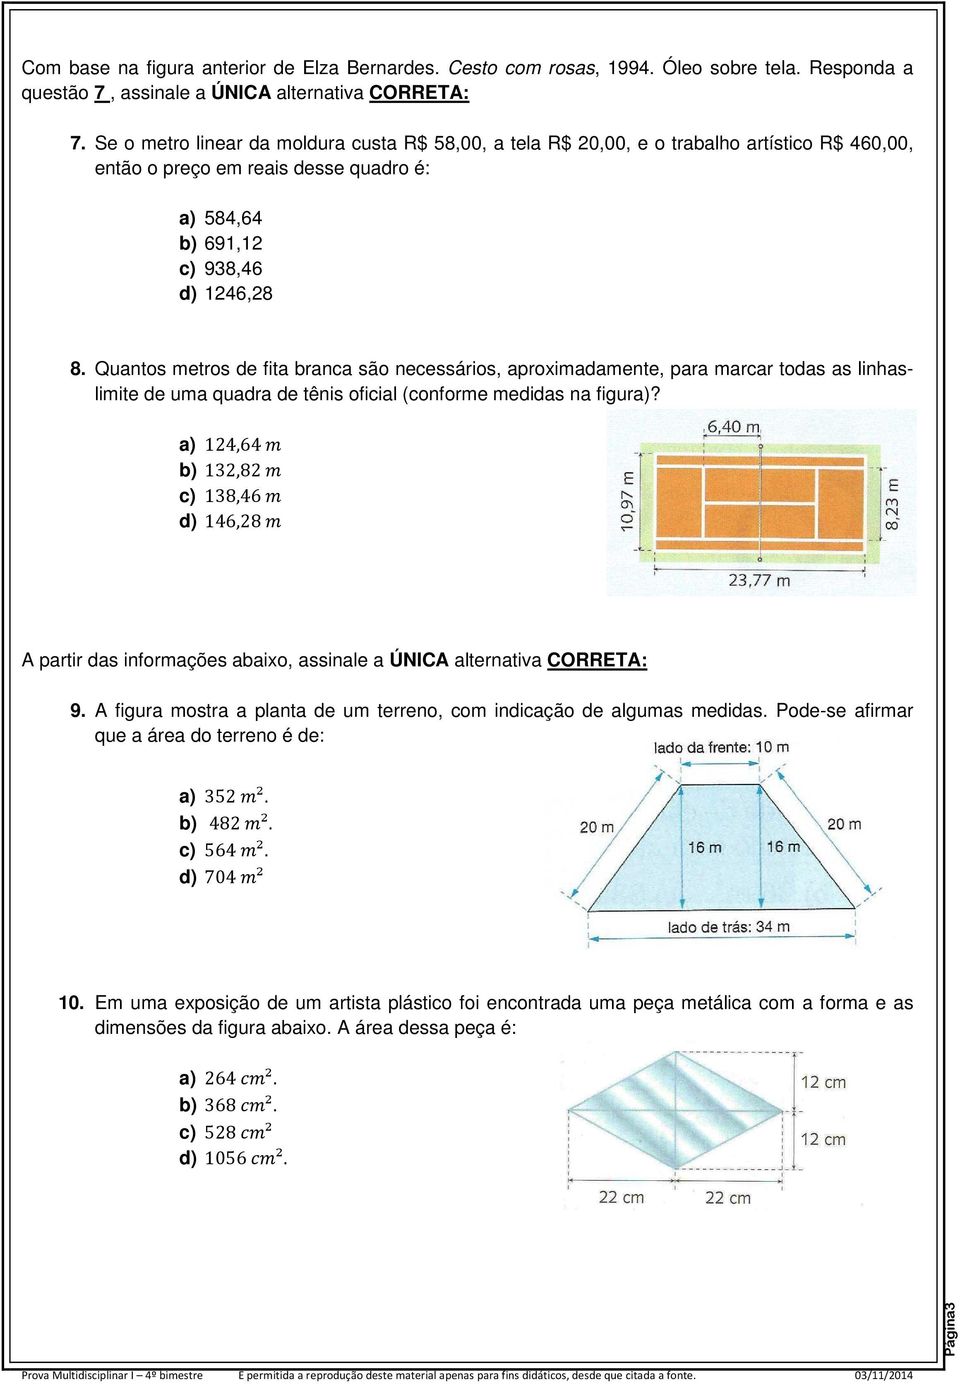 Quantos metros de fita branca são necessários, aproximadamente, para marcar todas as linhaslimite de uma quadra de tênis oficial (conforme medidas na figura)?